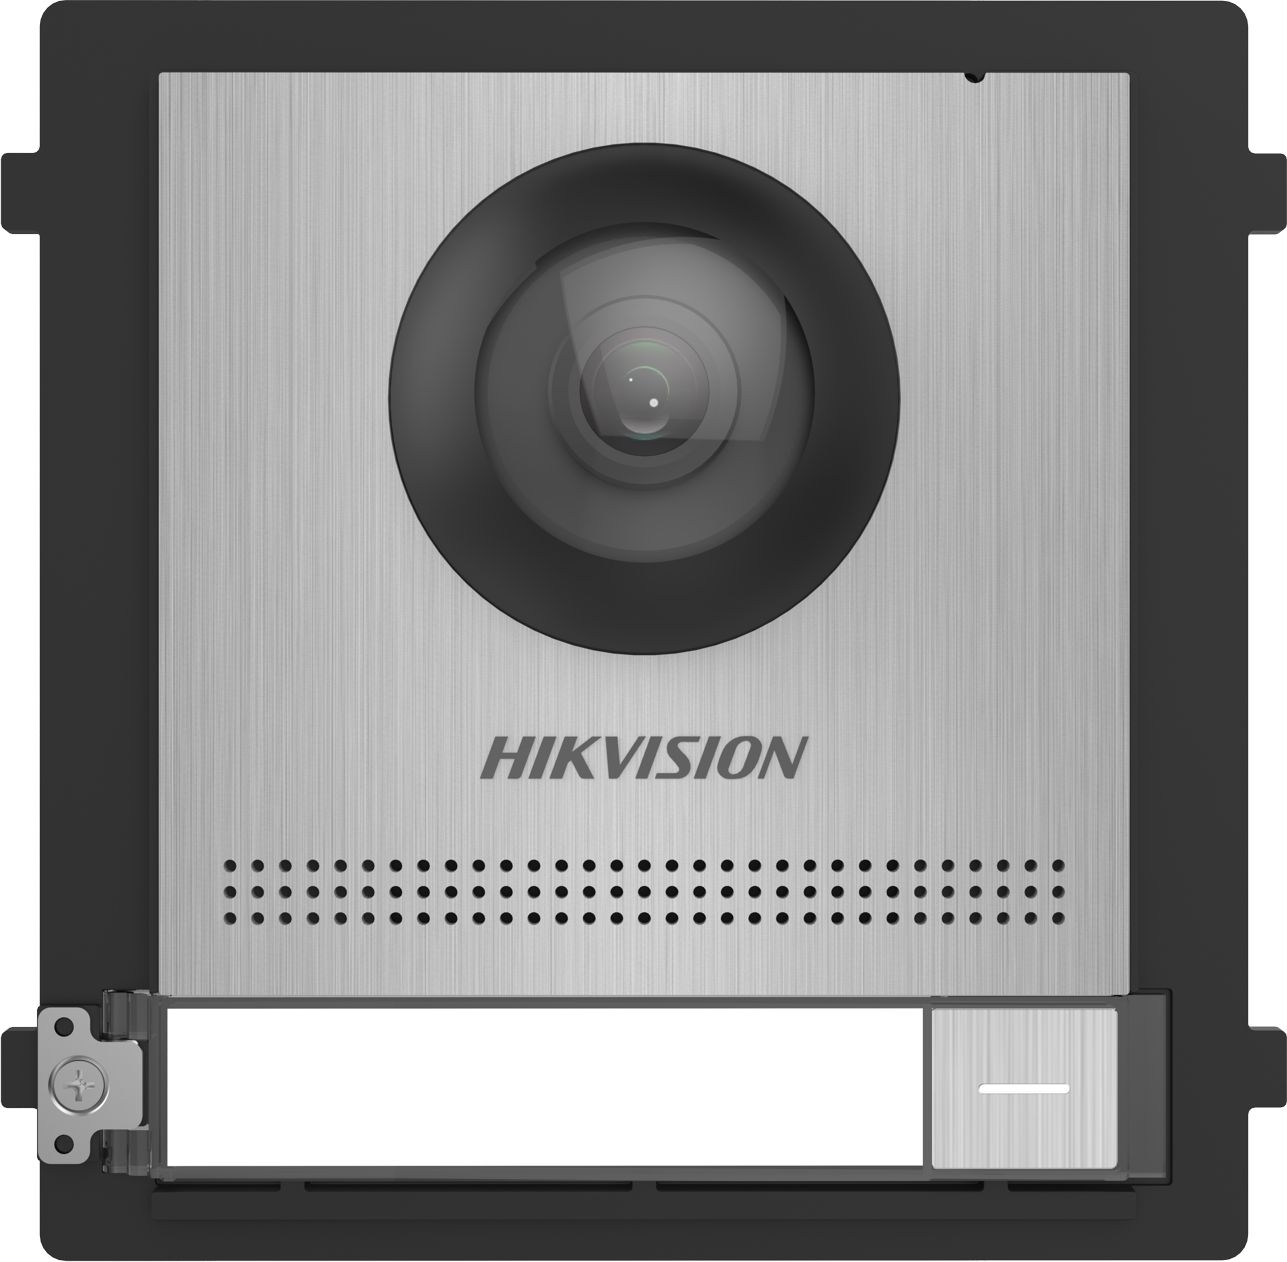 Panou.videointerfon modular de exterior Hikvision DS-KD8003-IME1/S; 1 xbuton apelare, camera video wide angle 180° Fish eye 2MP; permite conectarea pana la 8 submodule de extensie, conectare: TCP/IP, RTSP; customizare afisare nume; montaj aplicat sau ingropat (accesoriile demontaj nu sunt incluse)_1